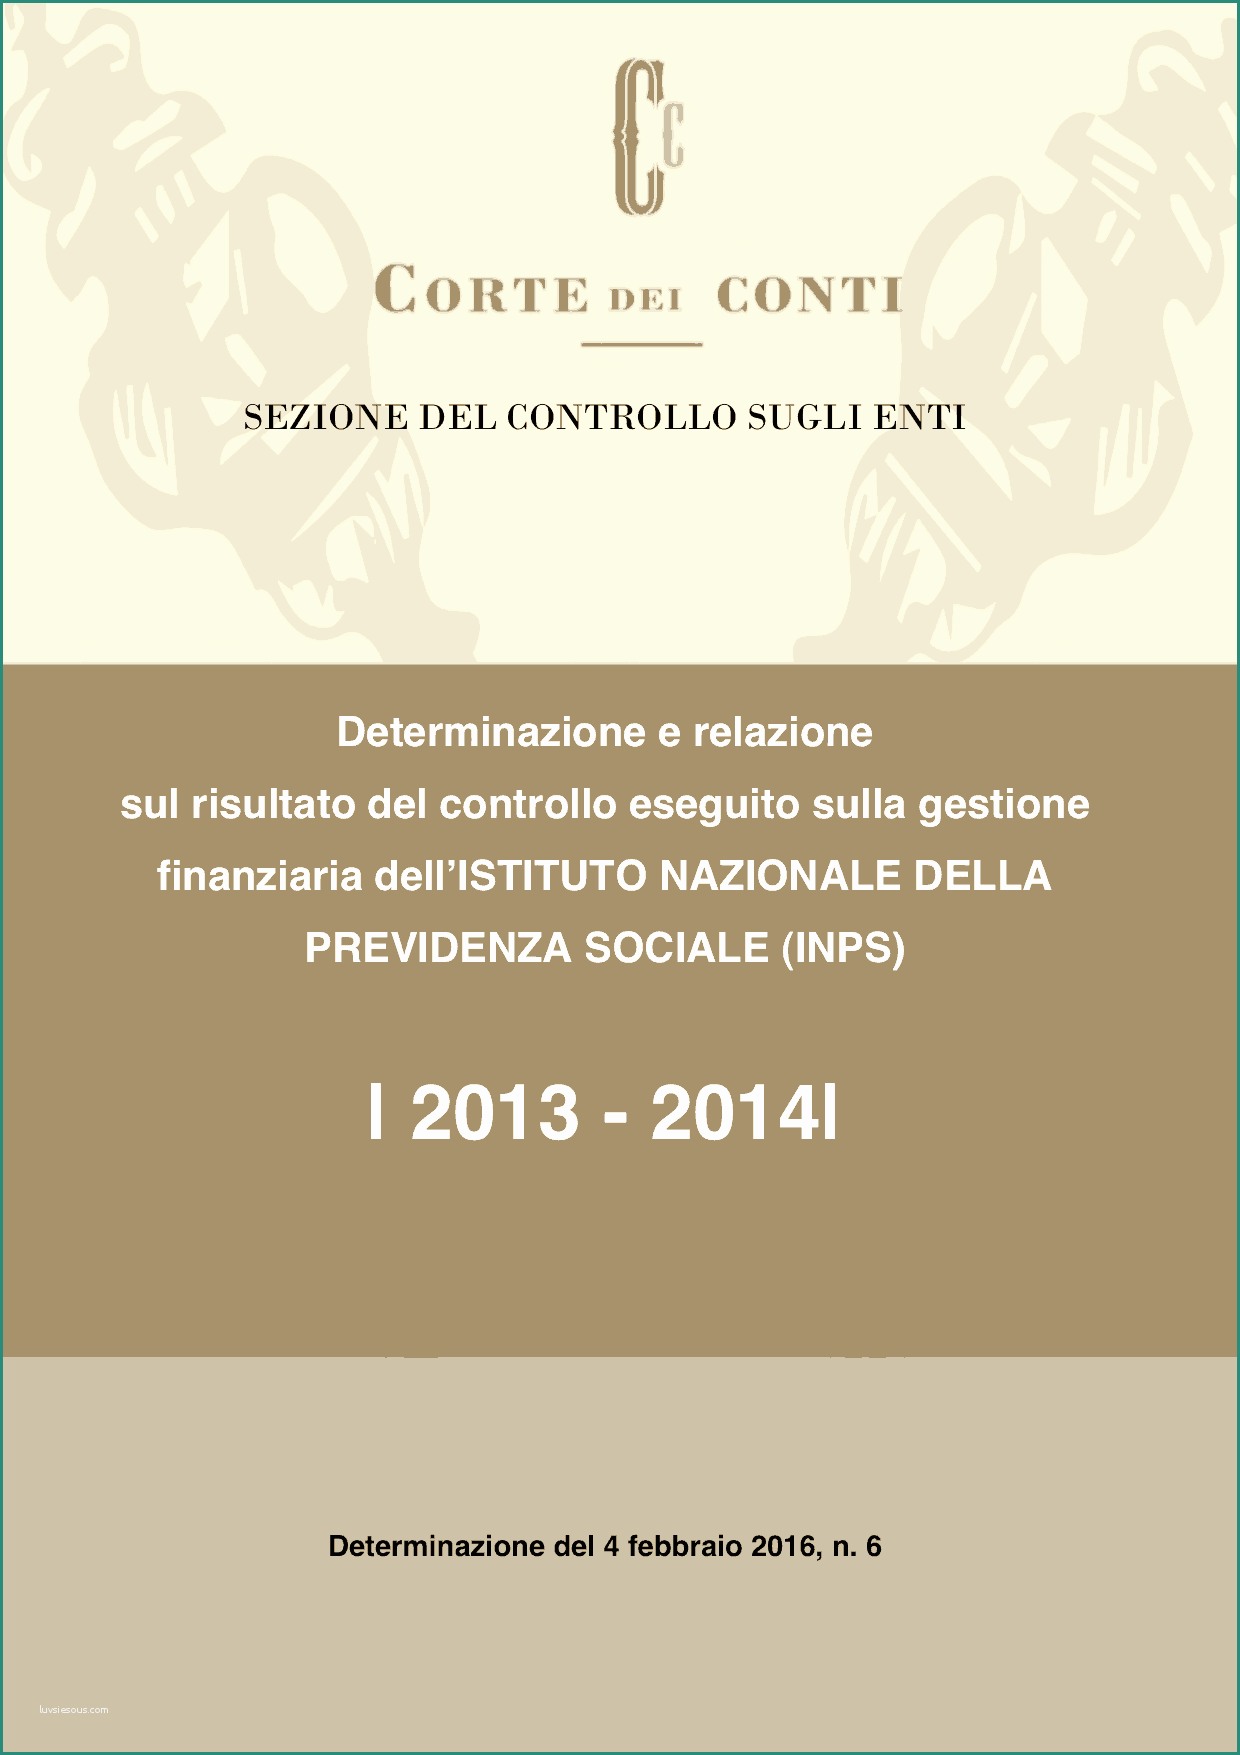 Mutui Poste Italiane Calcola Rata E Corte Dei Conti – Determinazione N 6 Del 4 Febbraio 2016